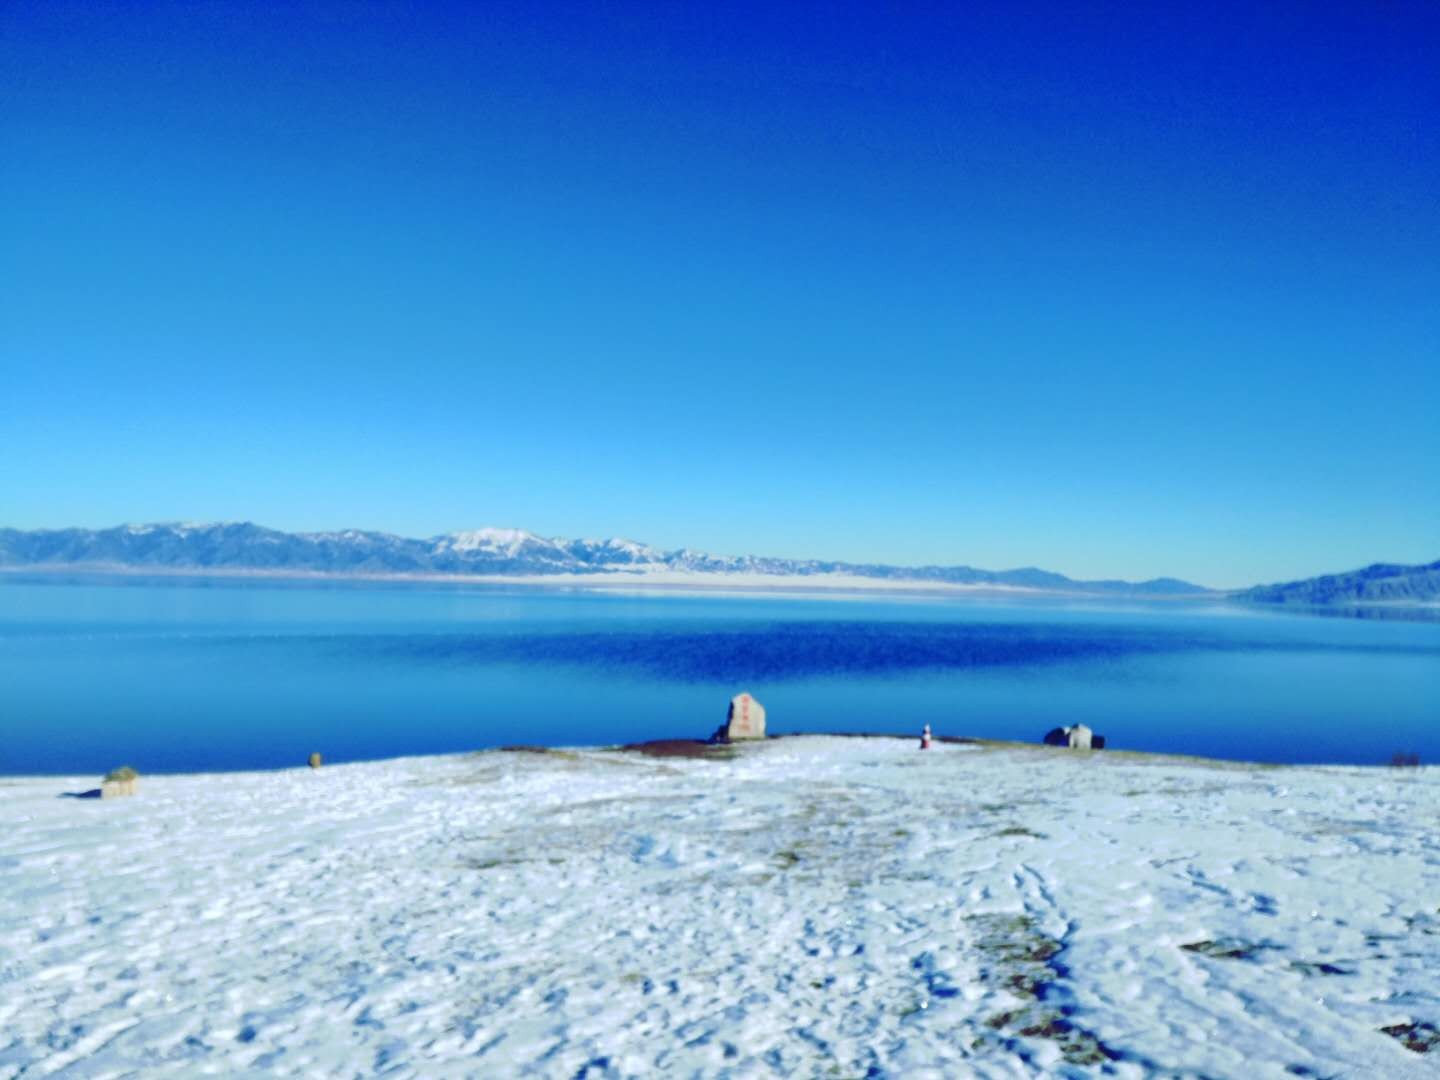 【携程攻略】博乐赛里木湖景点,晴天的赛里木湖真是新疆的一颗美丽明珠